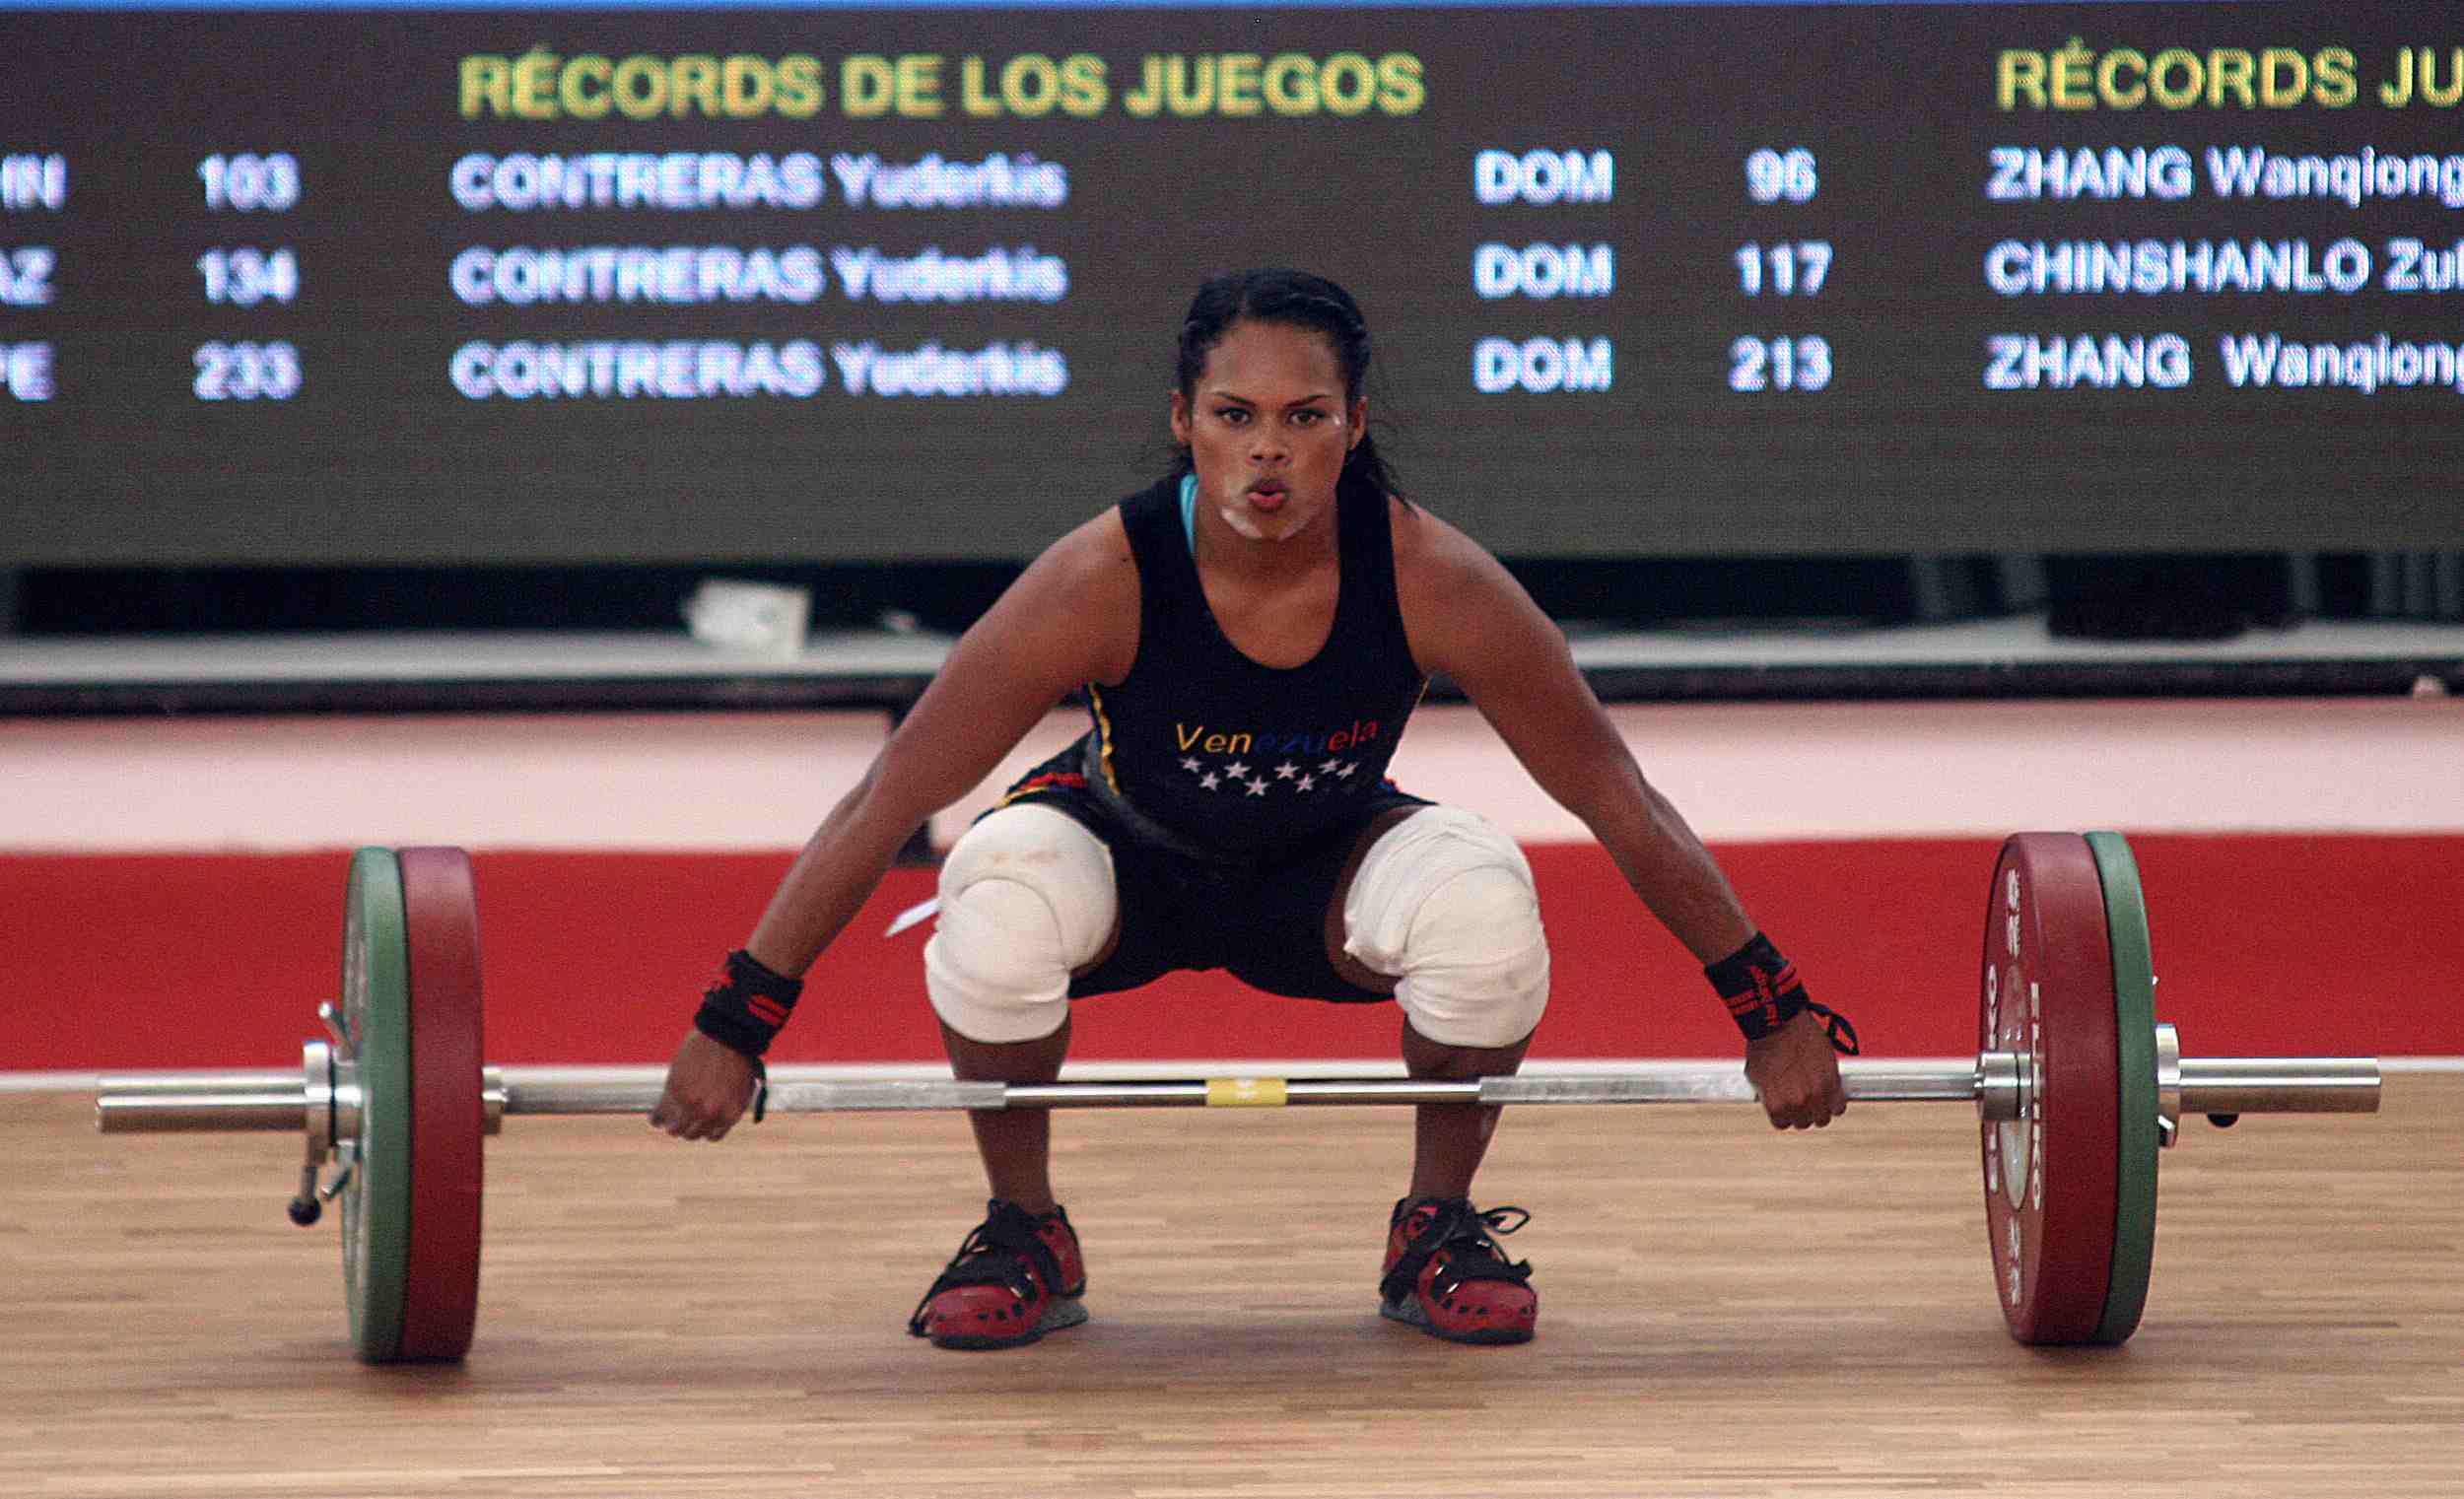 El Sumario - La pesista Génesis Rodríguez se alzó con dos medallas de oro superando todas las expectativas de la competición